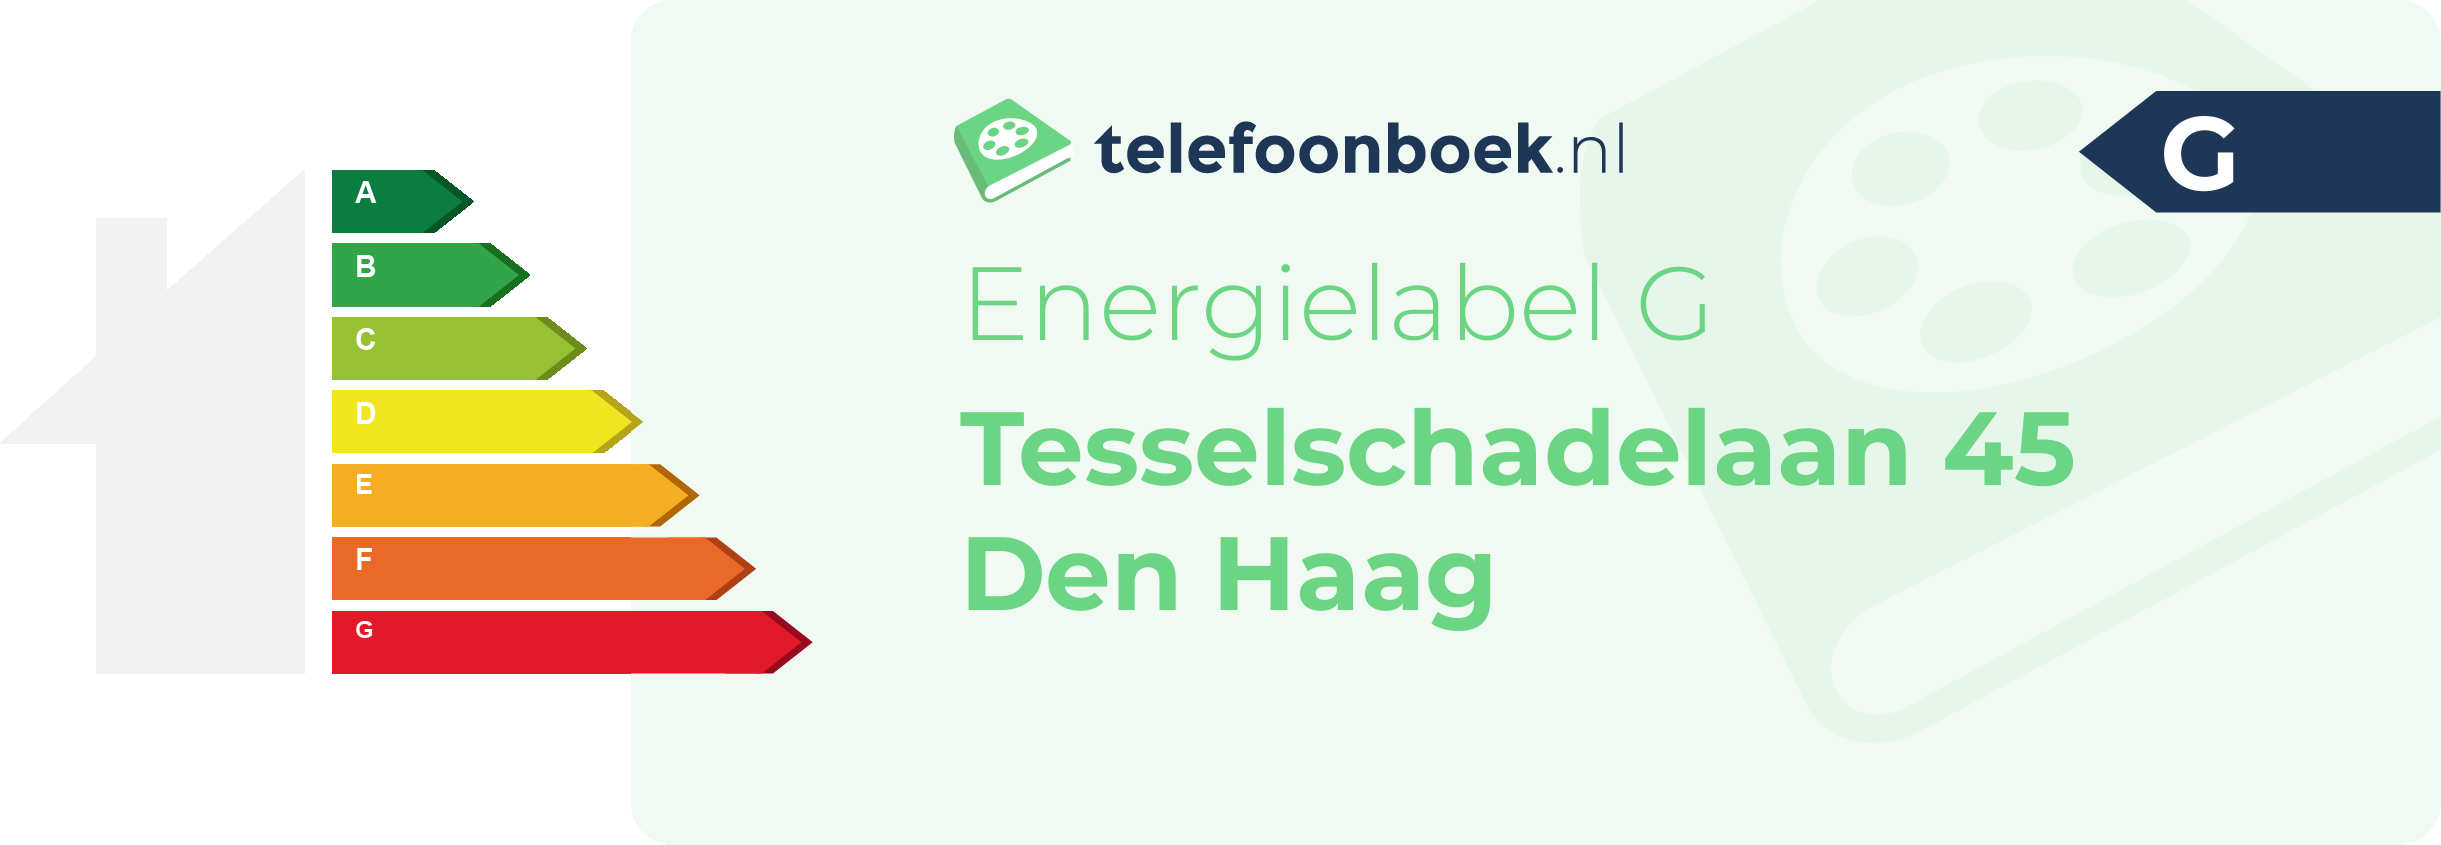 Energielabel Tesselschadelaan 45 Den Haag